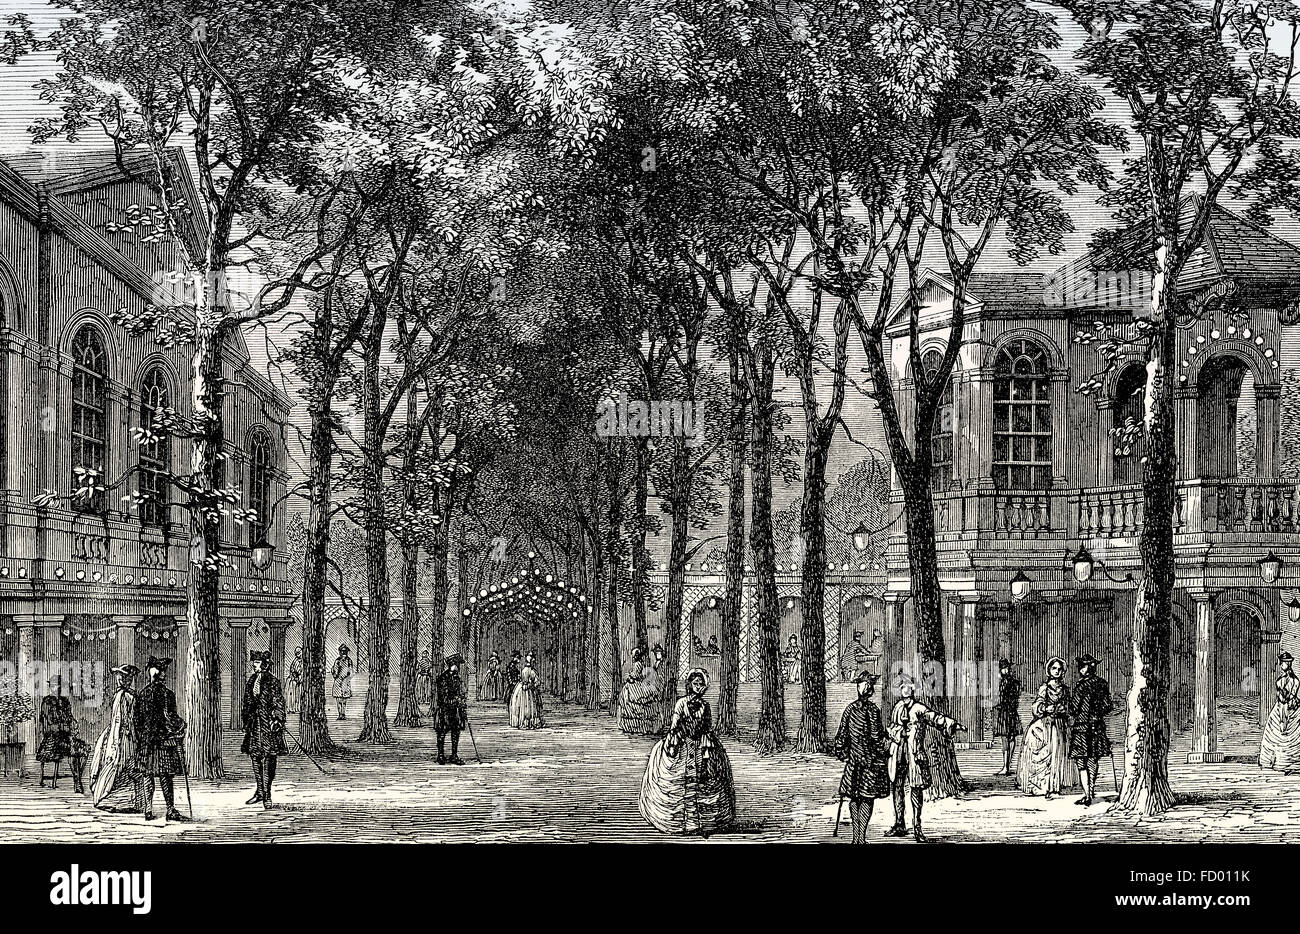 Marylebone Gardens, 1780, aujourd'hui un quartier du centre de Londres, City of Westminster, en Angleterre Banque D'Images